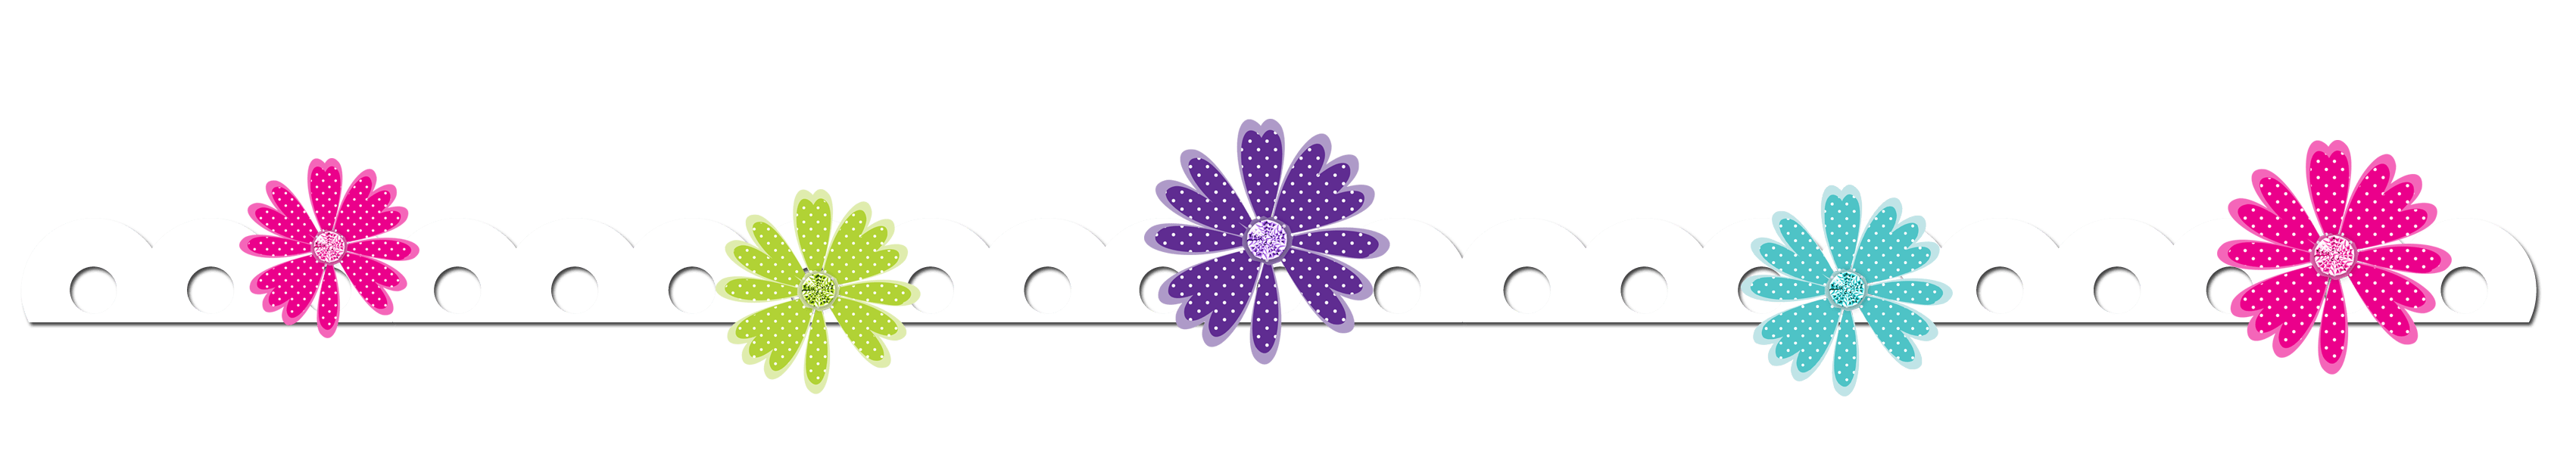 flower clipart banner